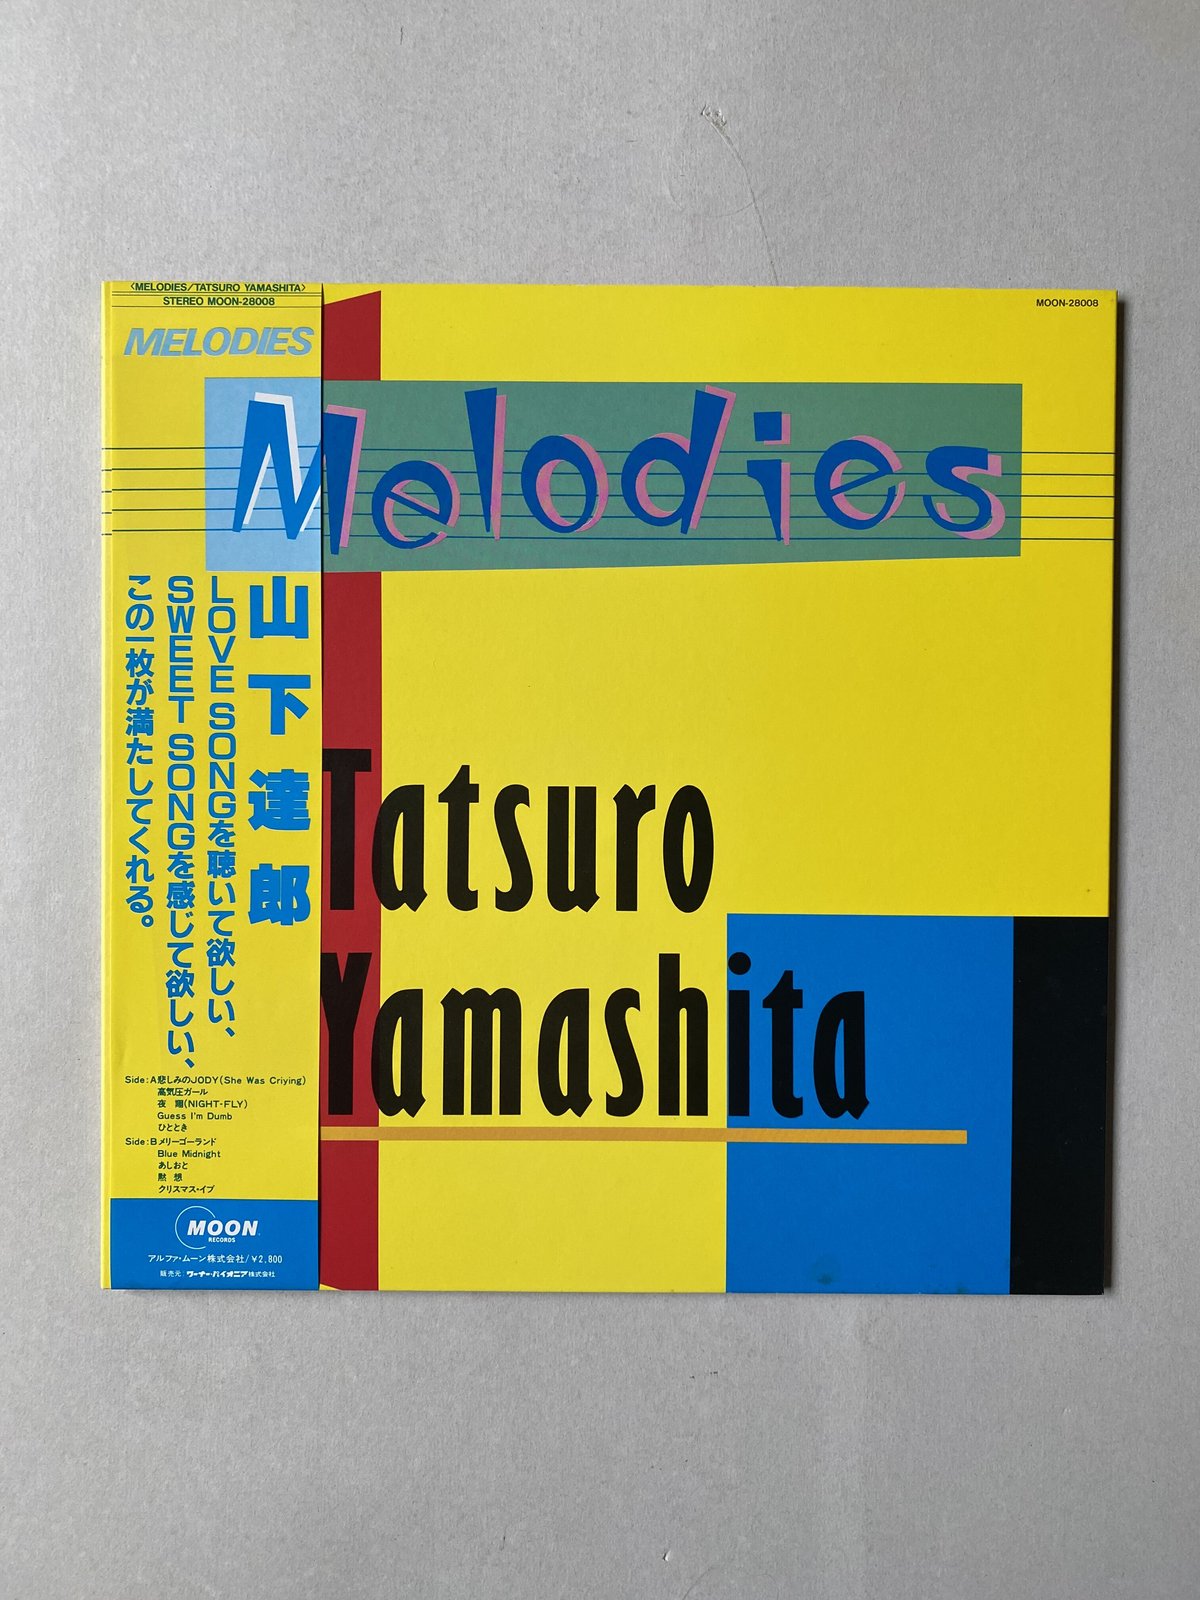 山下達郎 メロディーズ Melodies 30th LP レコード吉田美奈子 - glchs